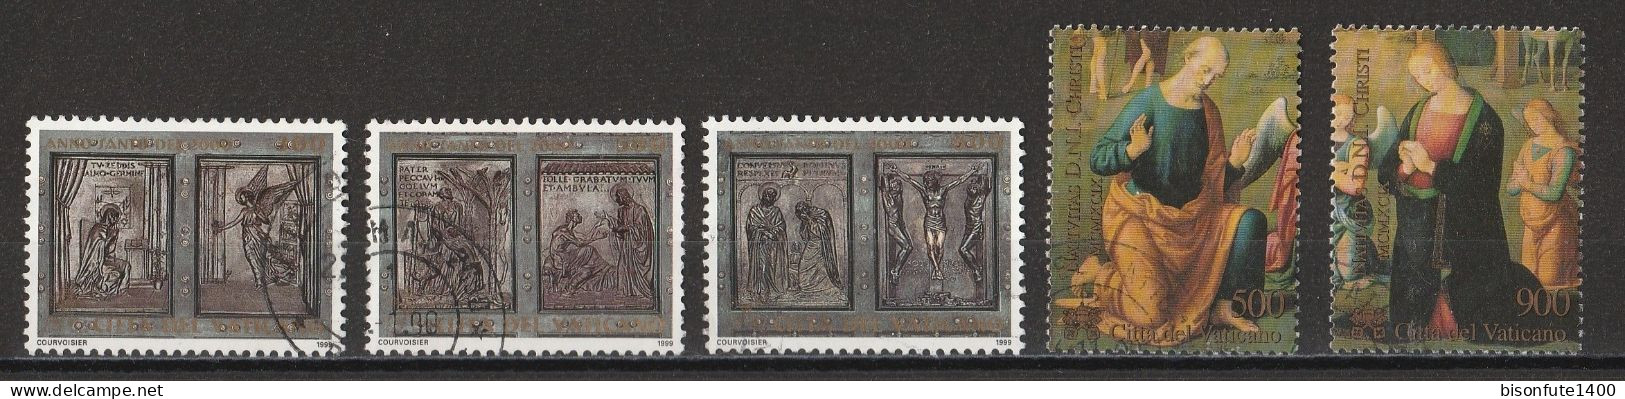 Vatican 1999 : Timbres Yvert & Tellier N° 1162 - 1164 - 1166 - 1177 - 1178 - 1179 Et 1180 Oblitérés - Gebruikt